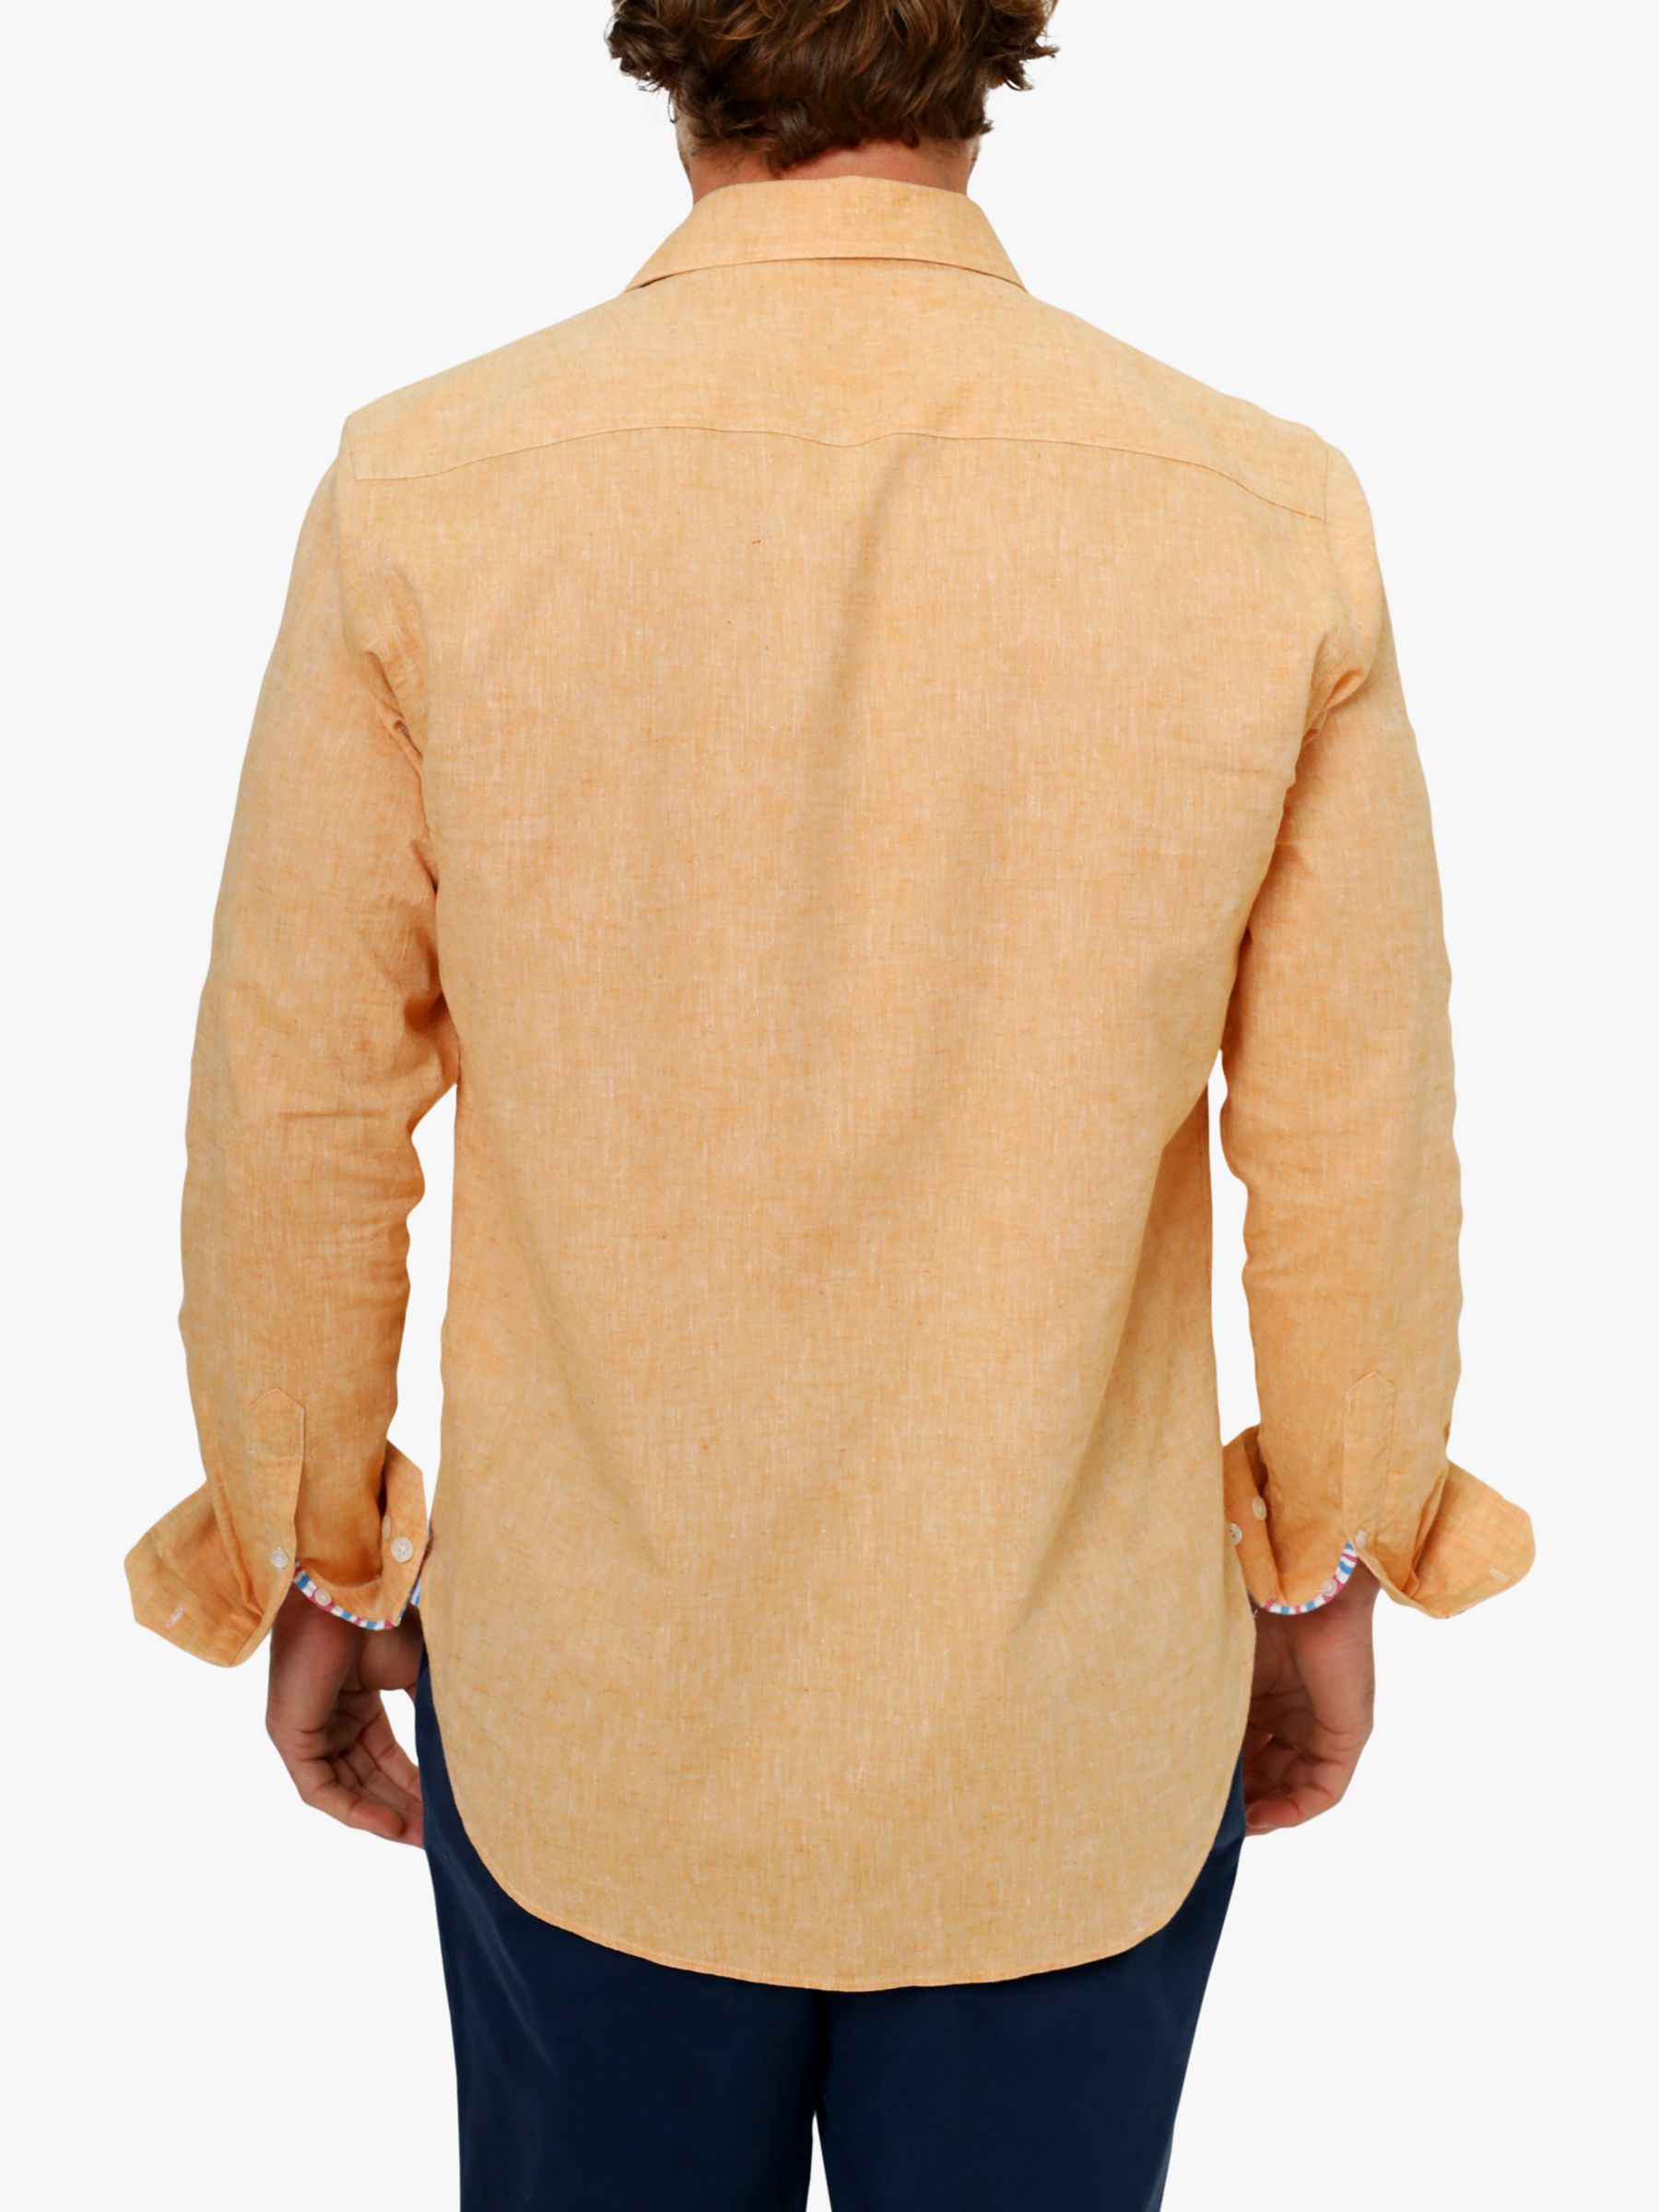 KOY Linen Blend Shirt, Tangerine, XXL